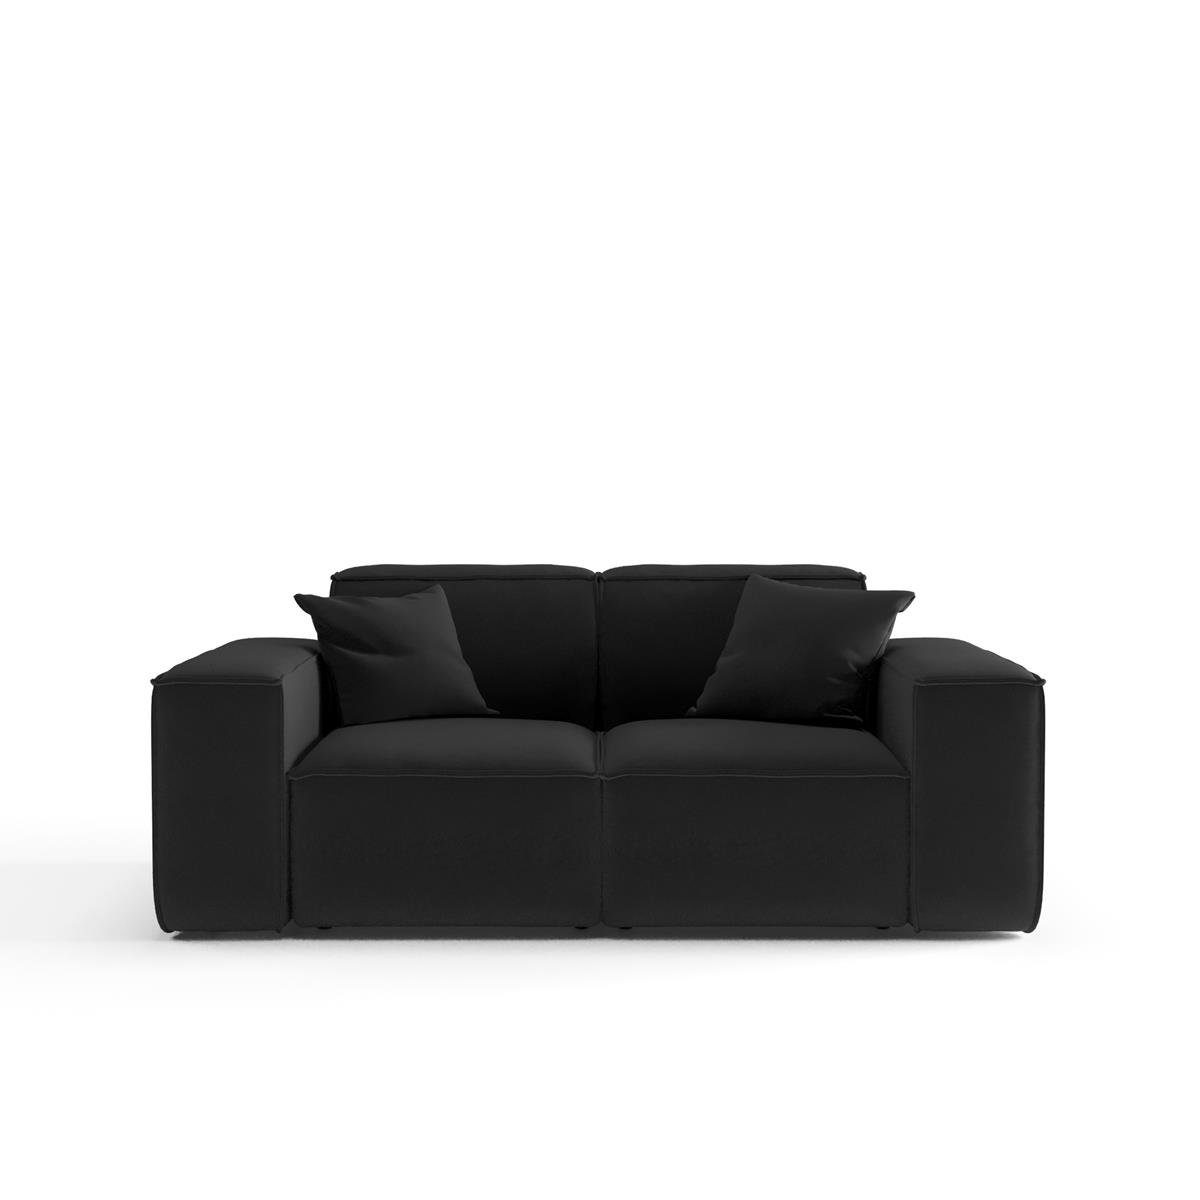 Wellenfedern, Lugano, 2-Sitzer Beautysofa mit inlusive oder Armlehnen im Sofa Sofa modernes Zweisitzer Breite Velourstoff, aus Stil, Cordstoff